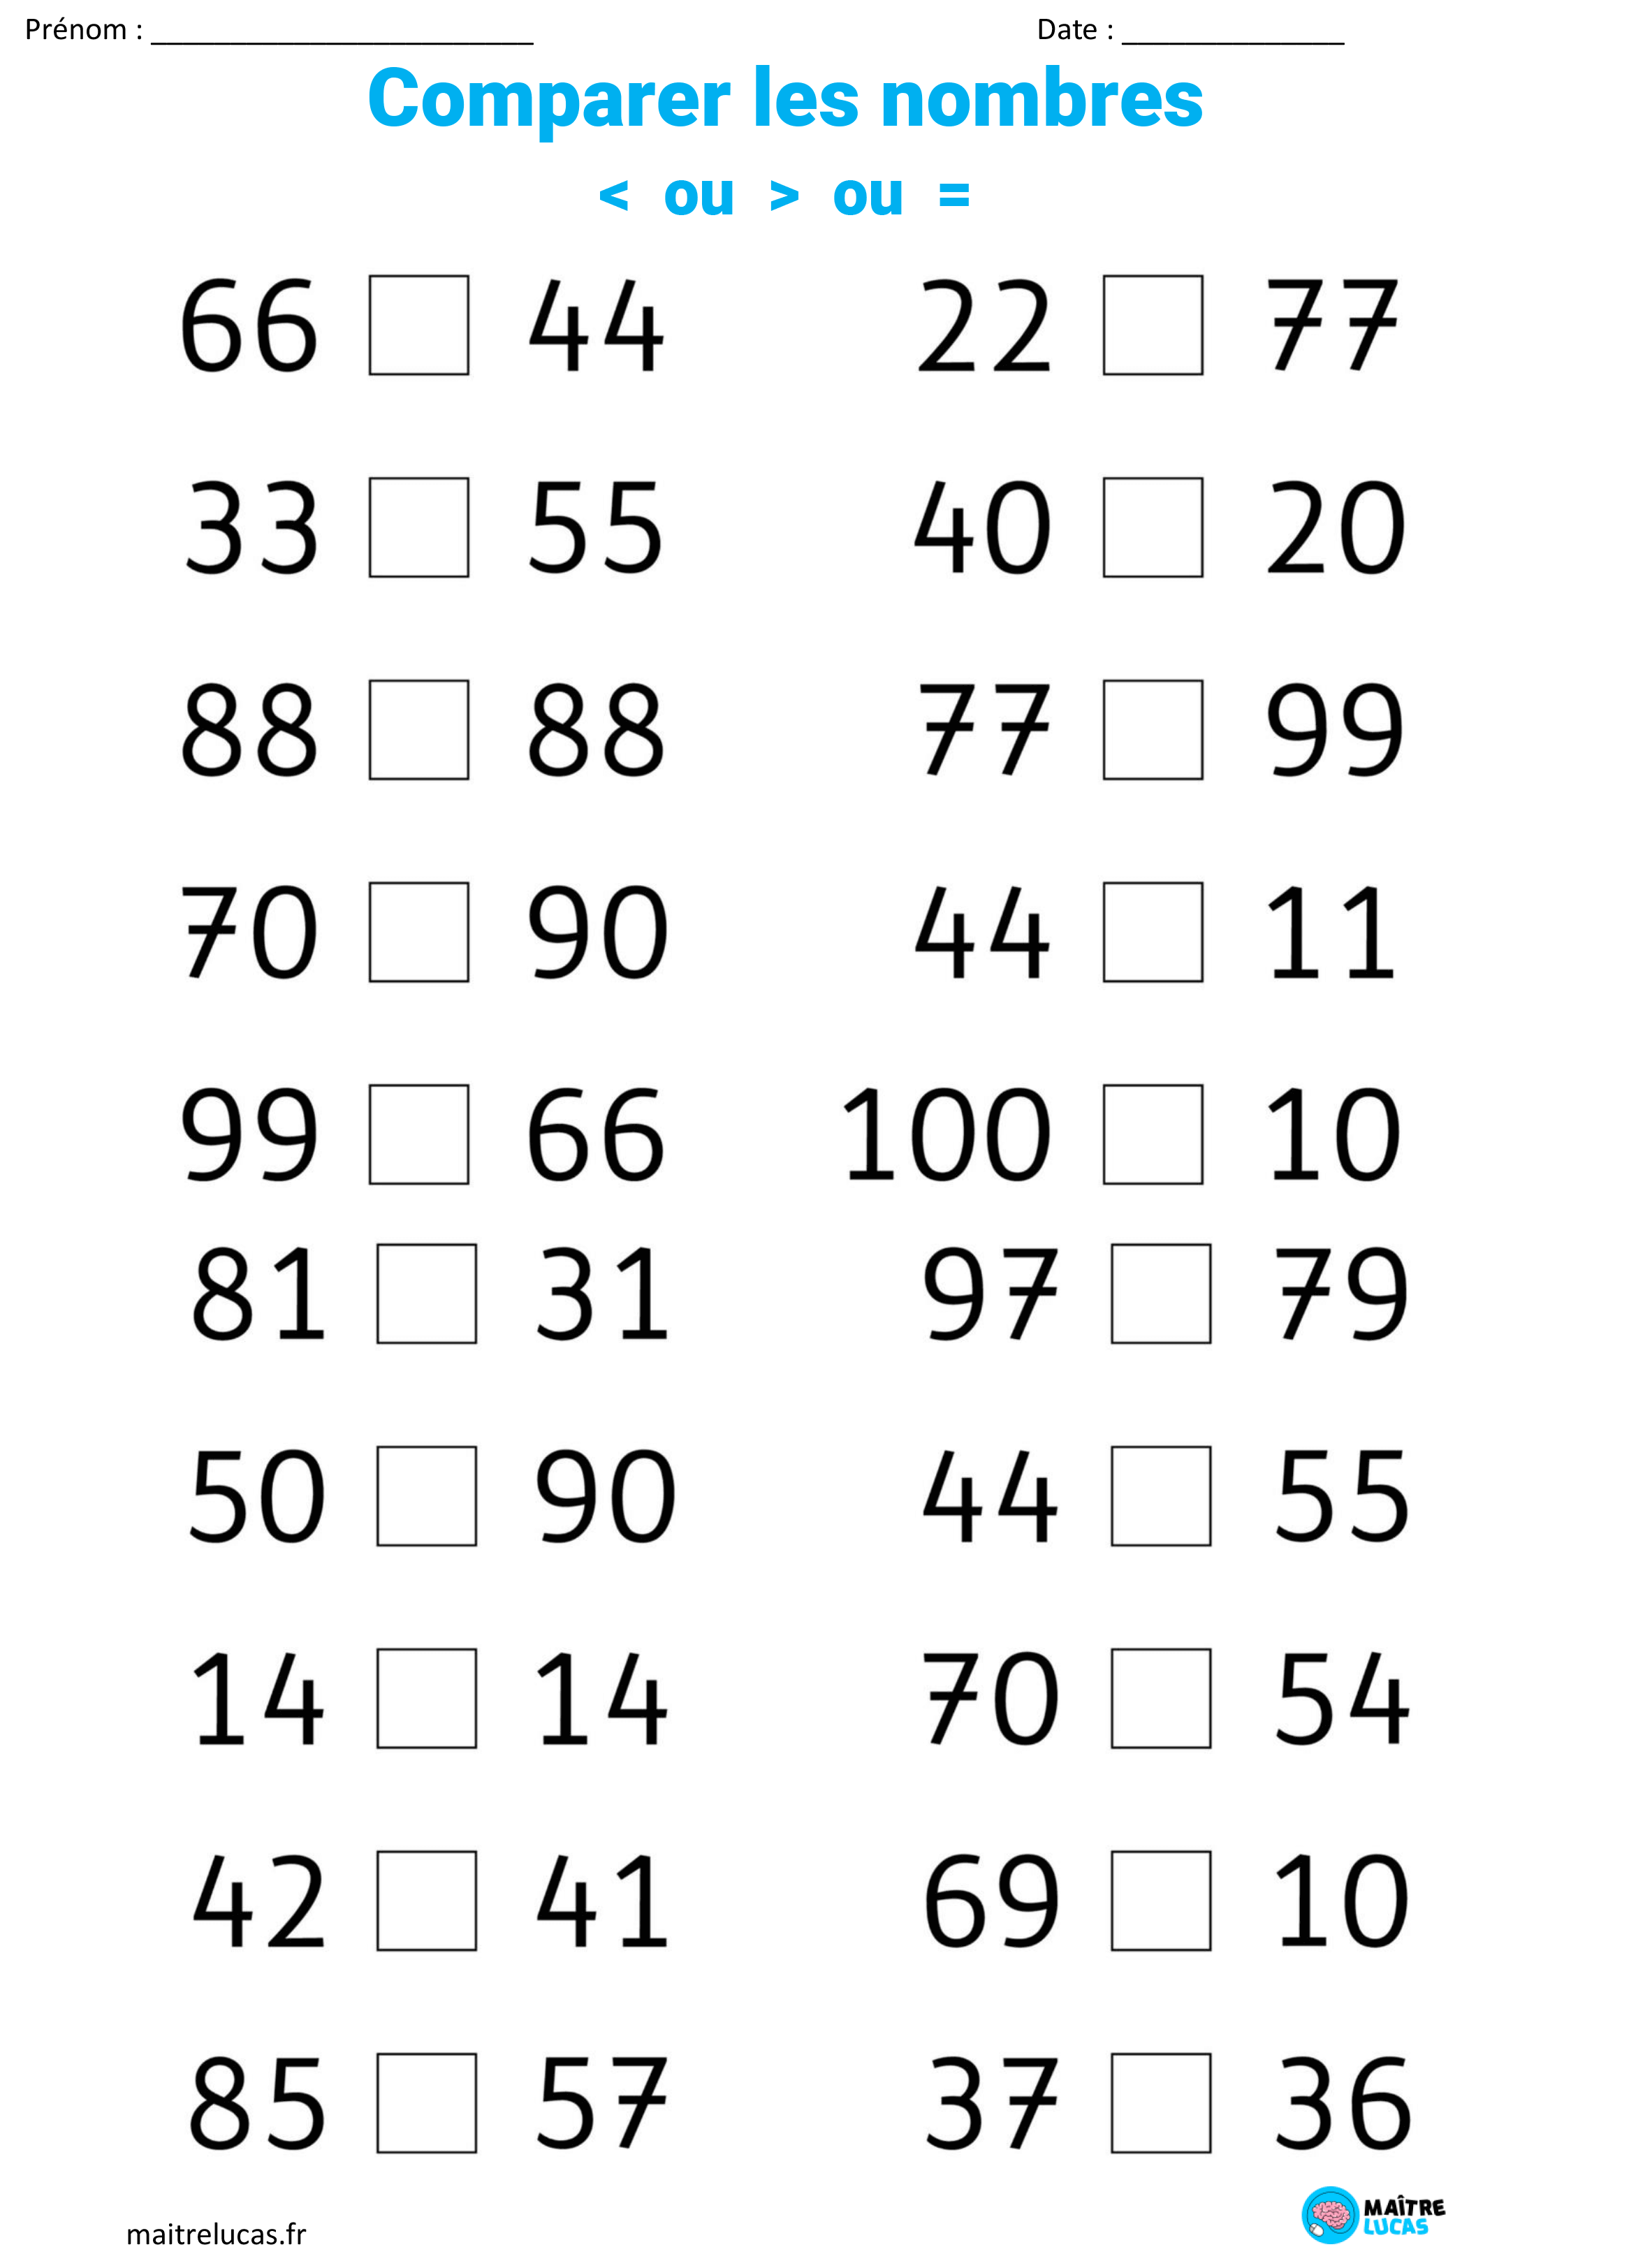 Fiches d'exercices comparer les nombres jusqu'à 100